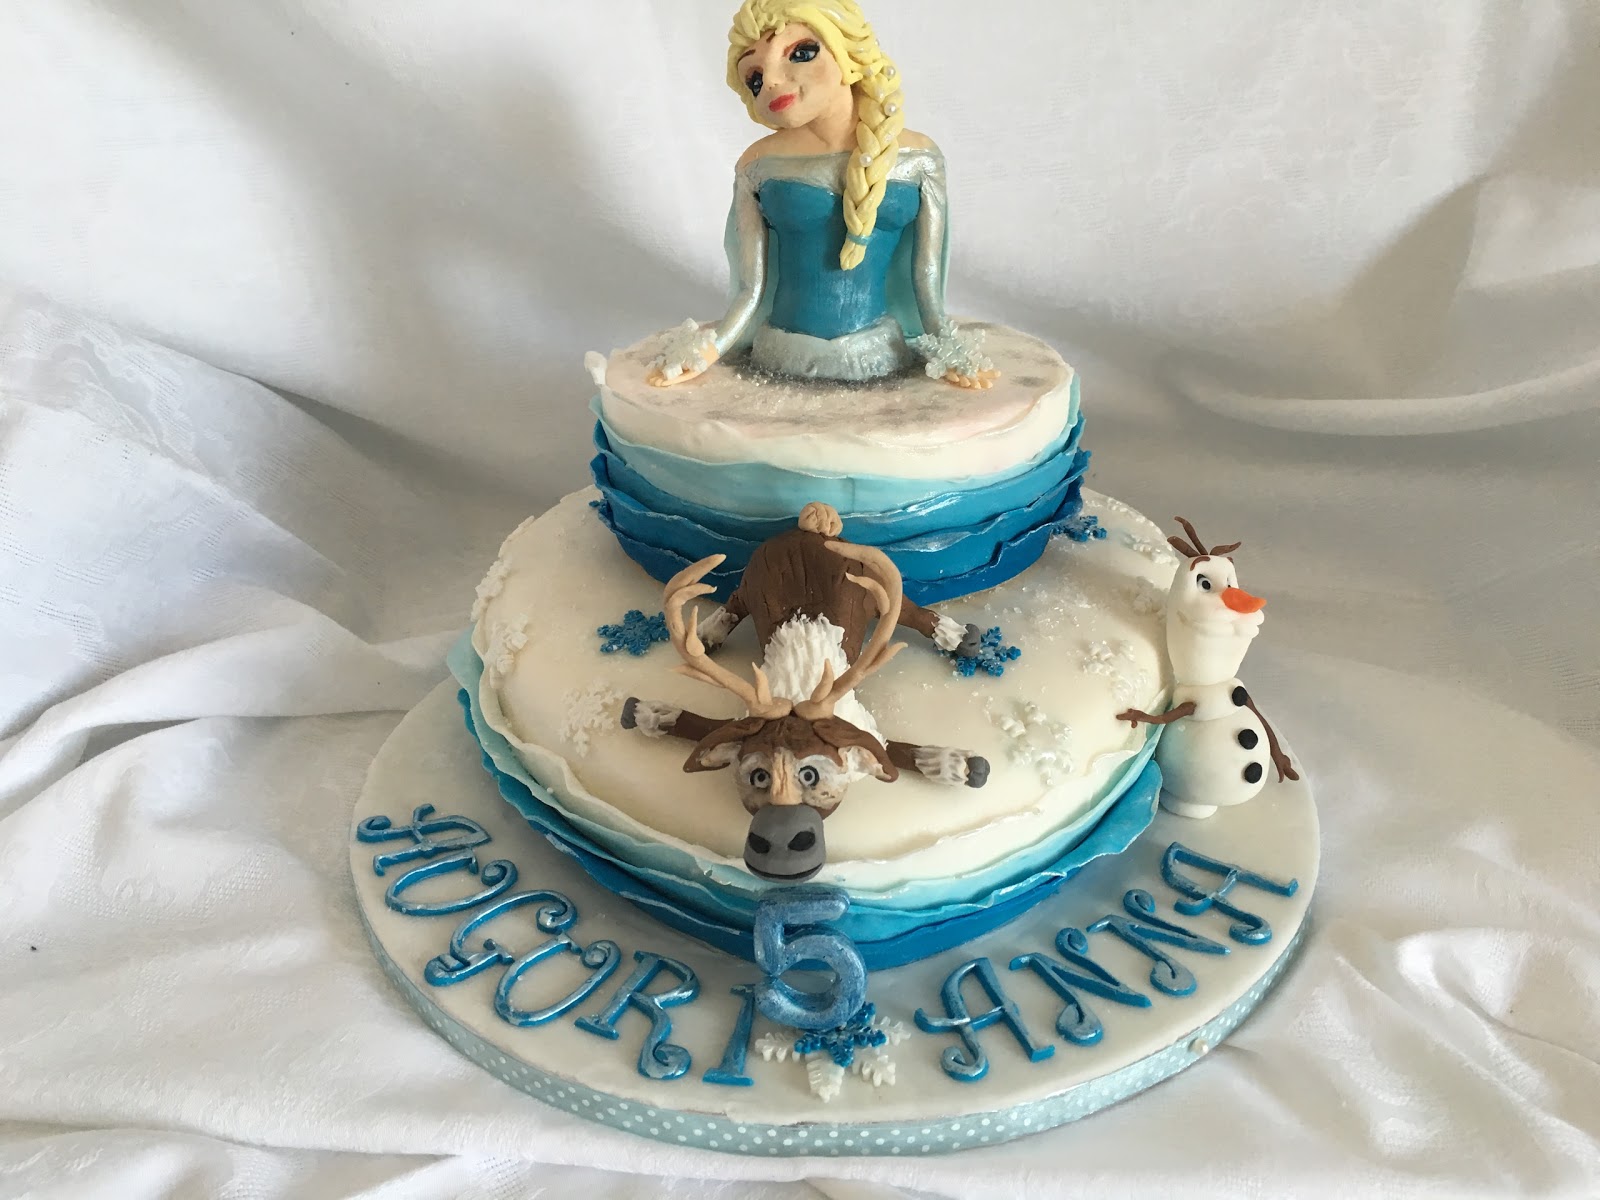 Festa tema Frozen: il compleanno di Anna!